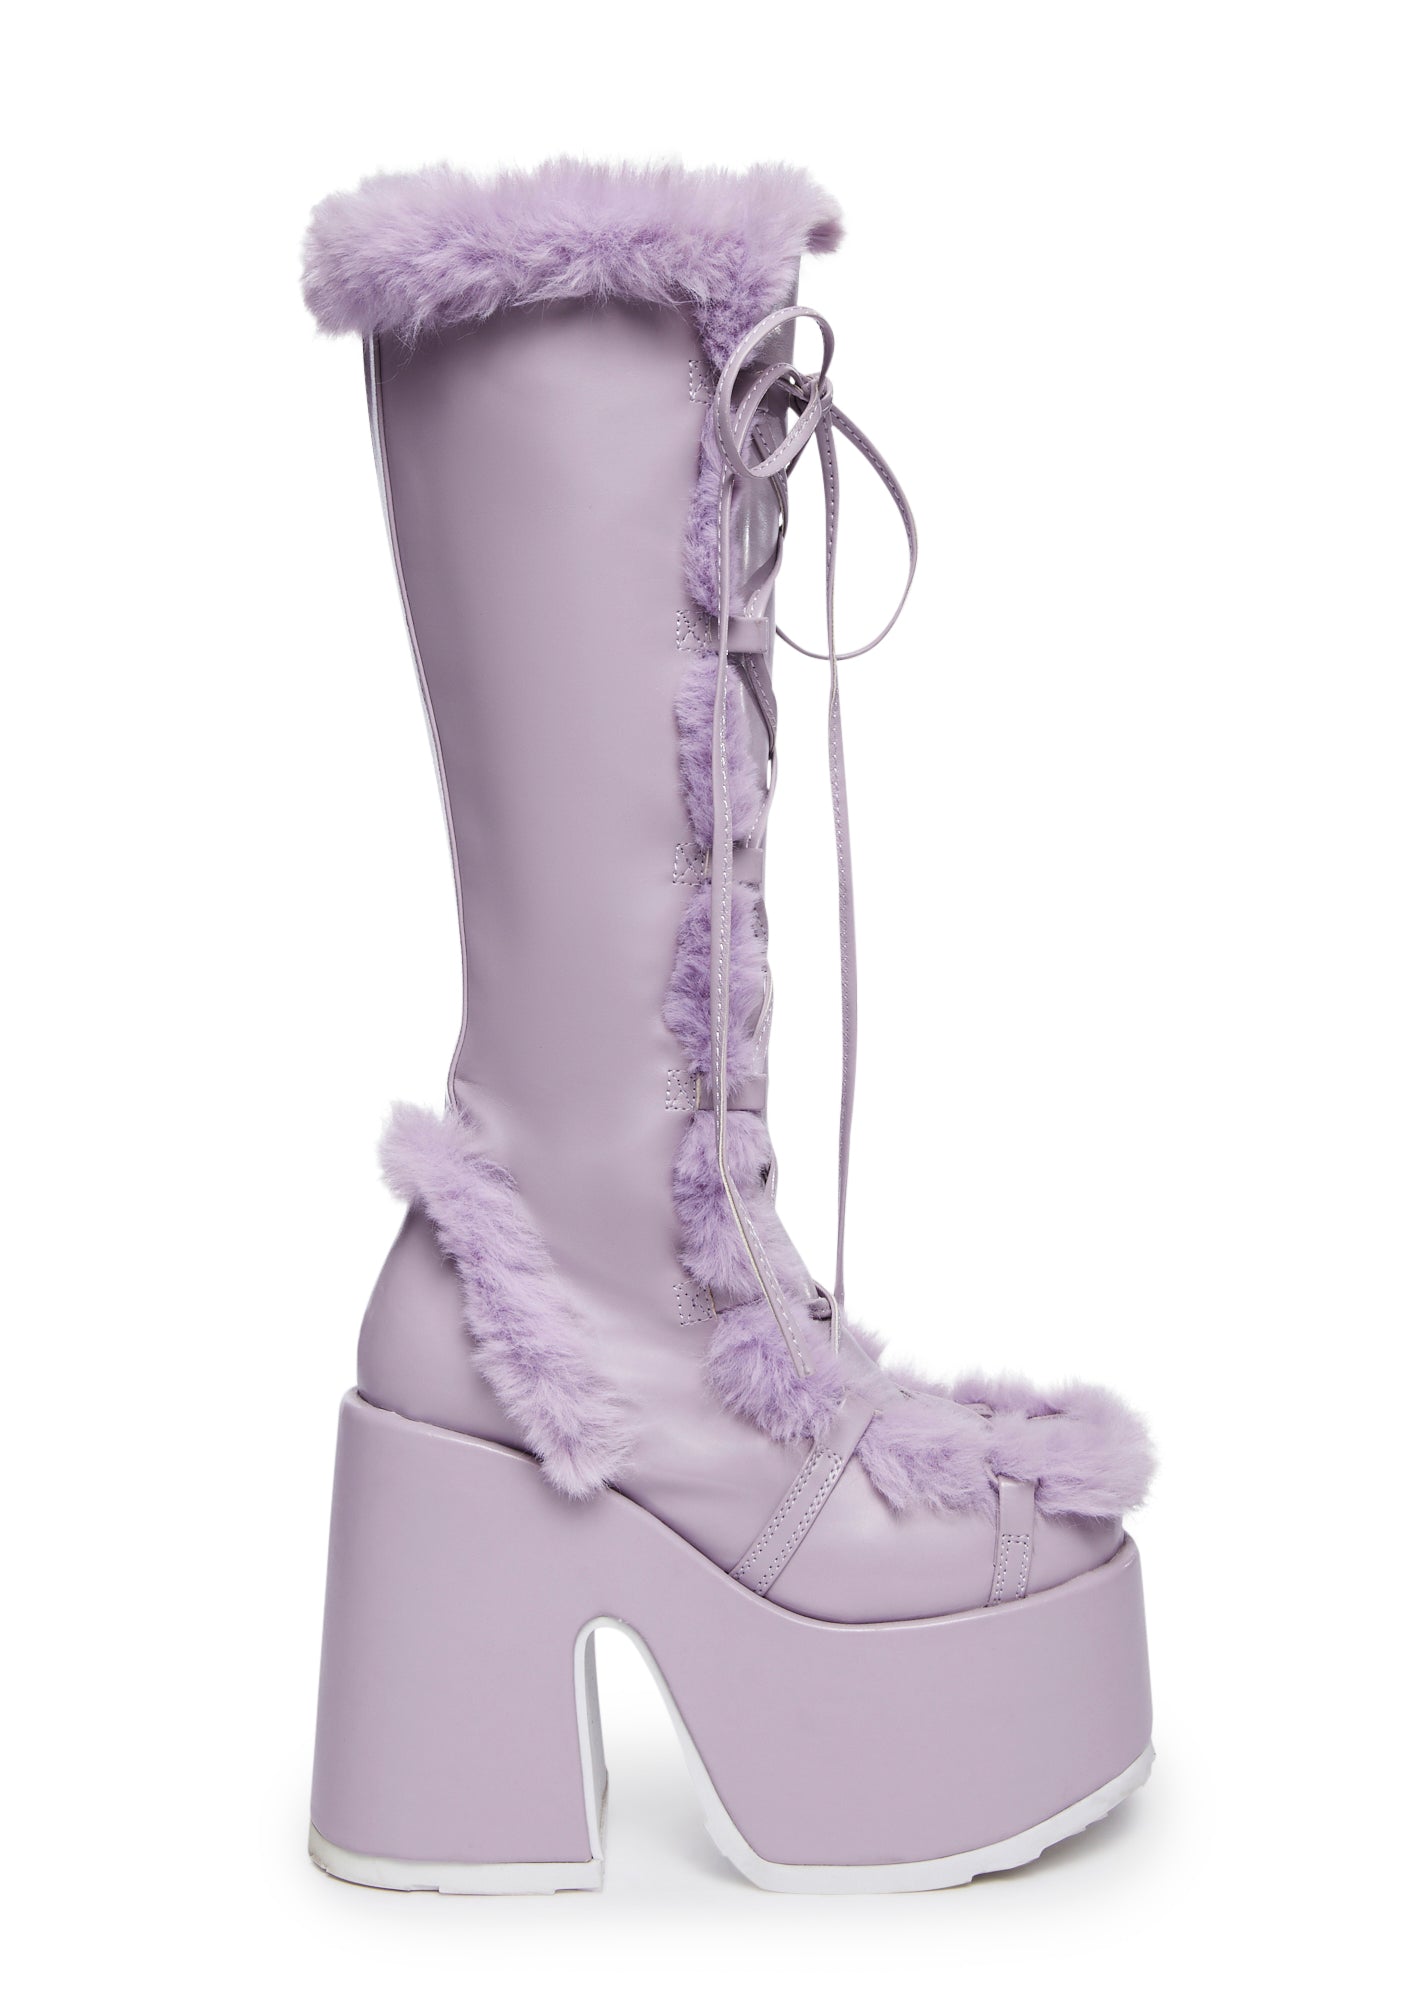 Demonia x Dolls Kill Camel-311 Faux Fur Knee High Platform Boots - Purple